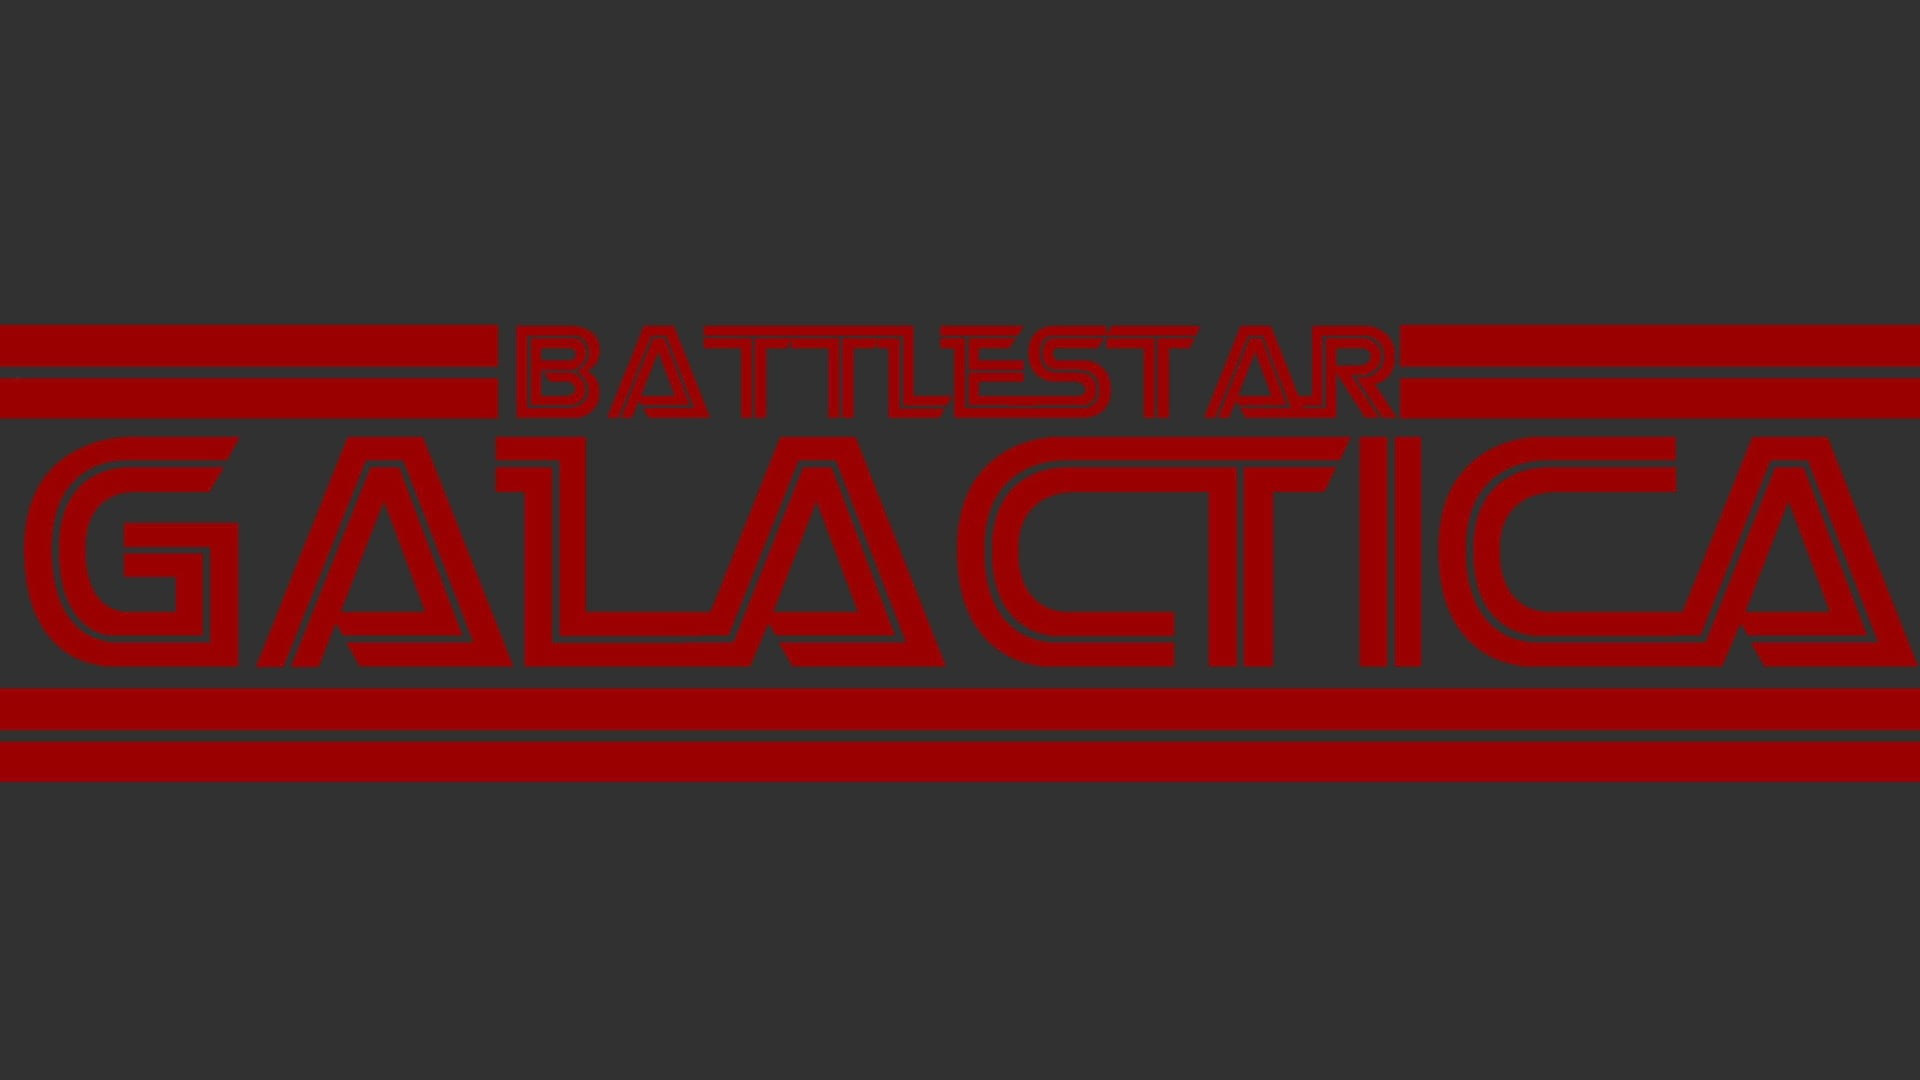 battlestar galactica 1978, red, neon, text, illuminated, communication